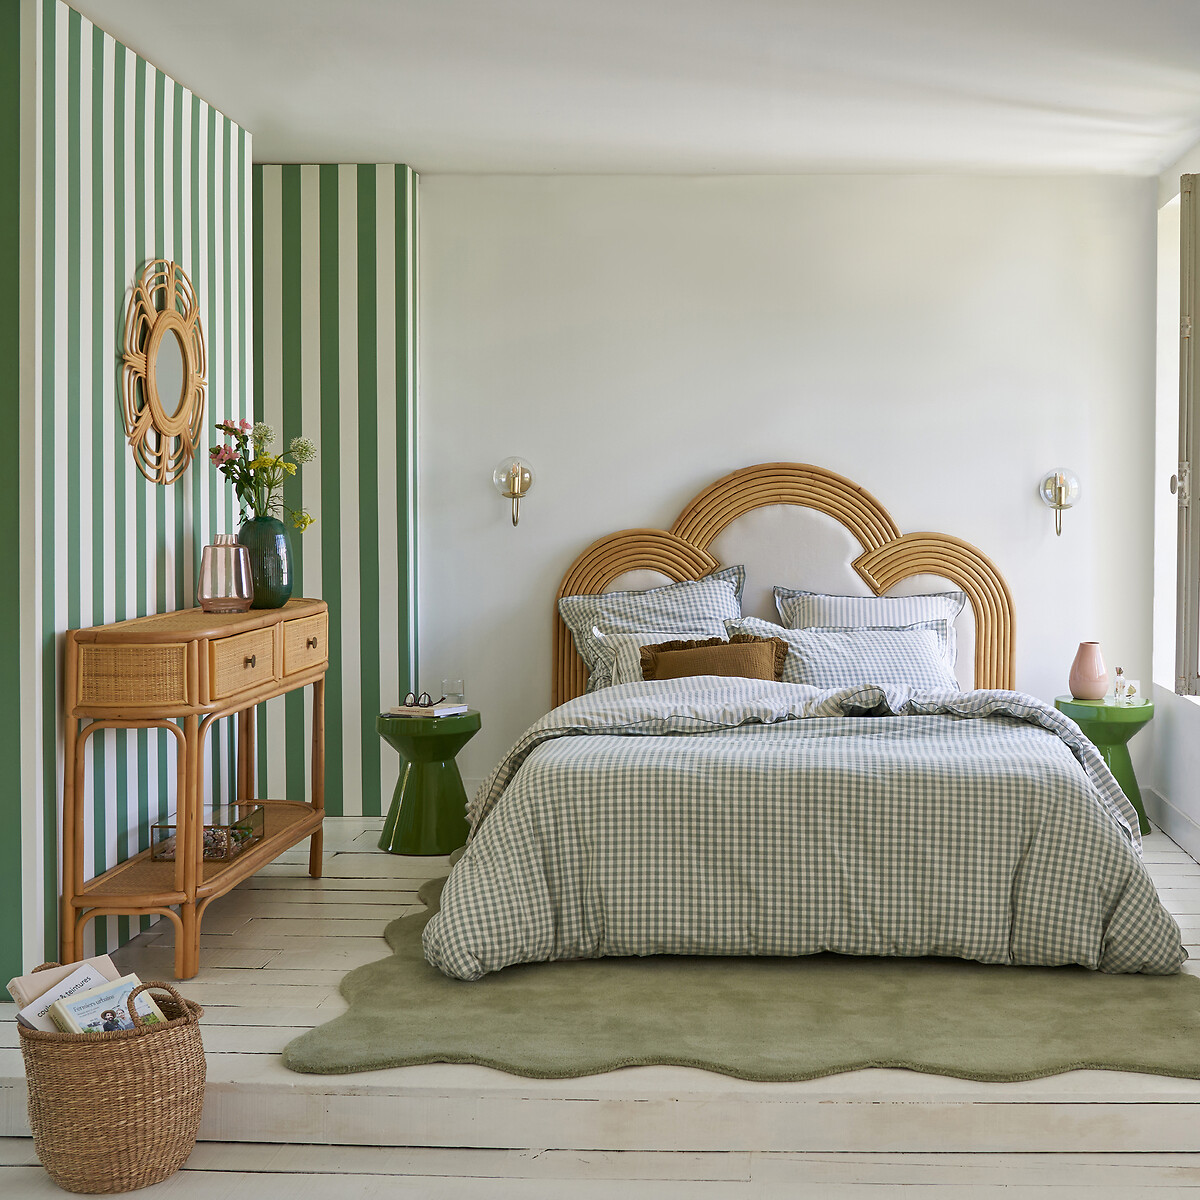 Testata del letto imbottita, callie noce/verde La Redoute Interieurs